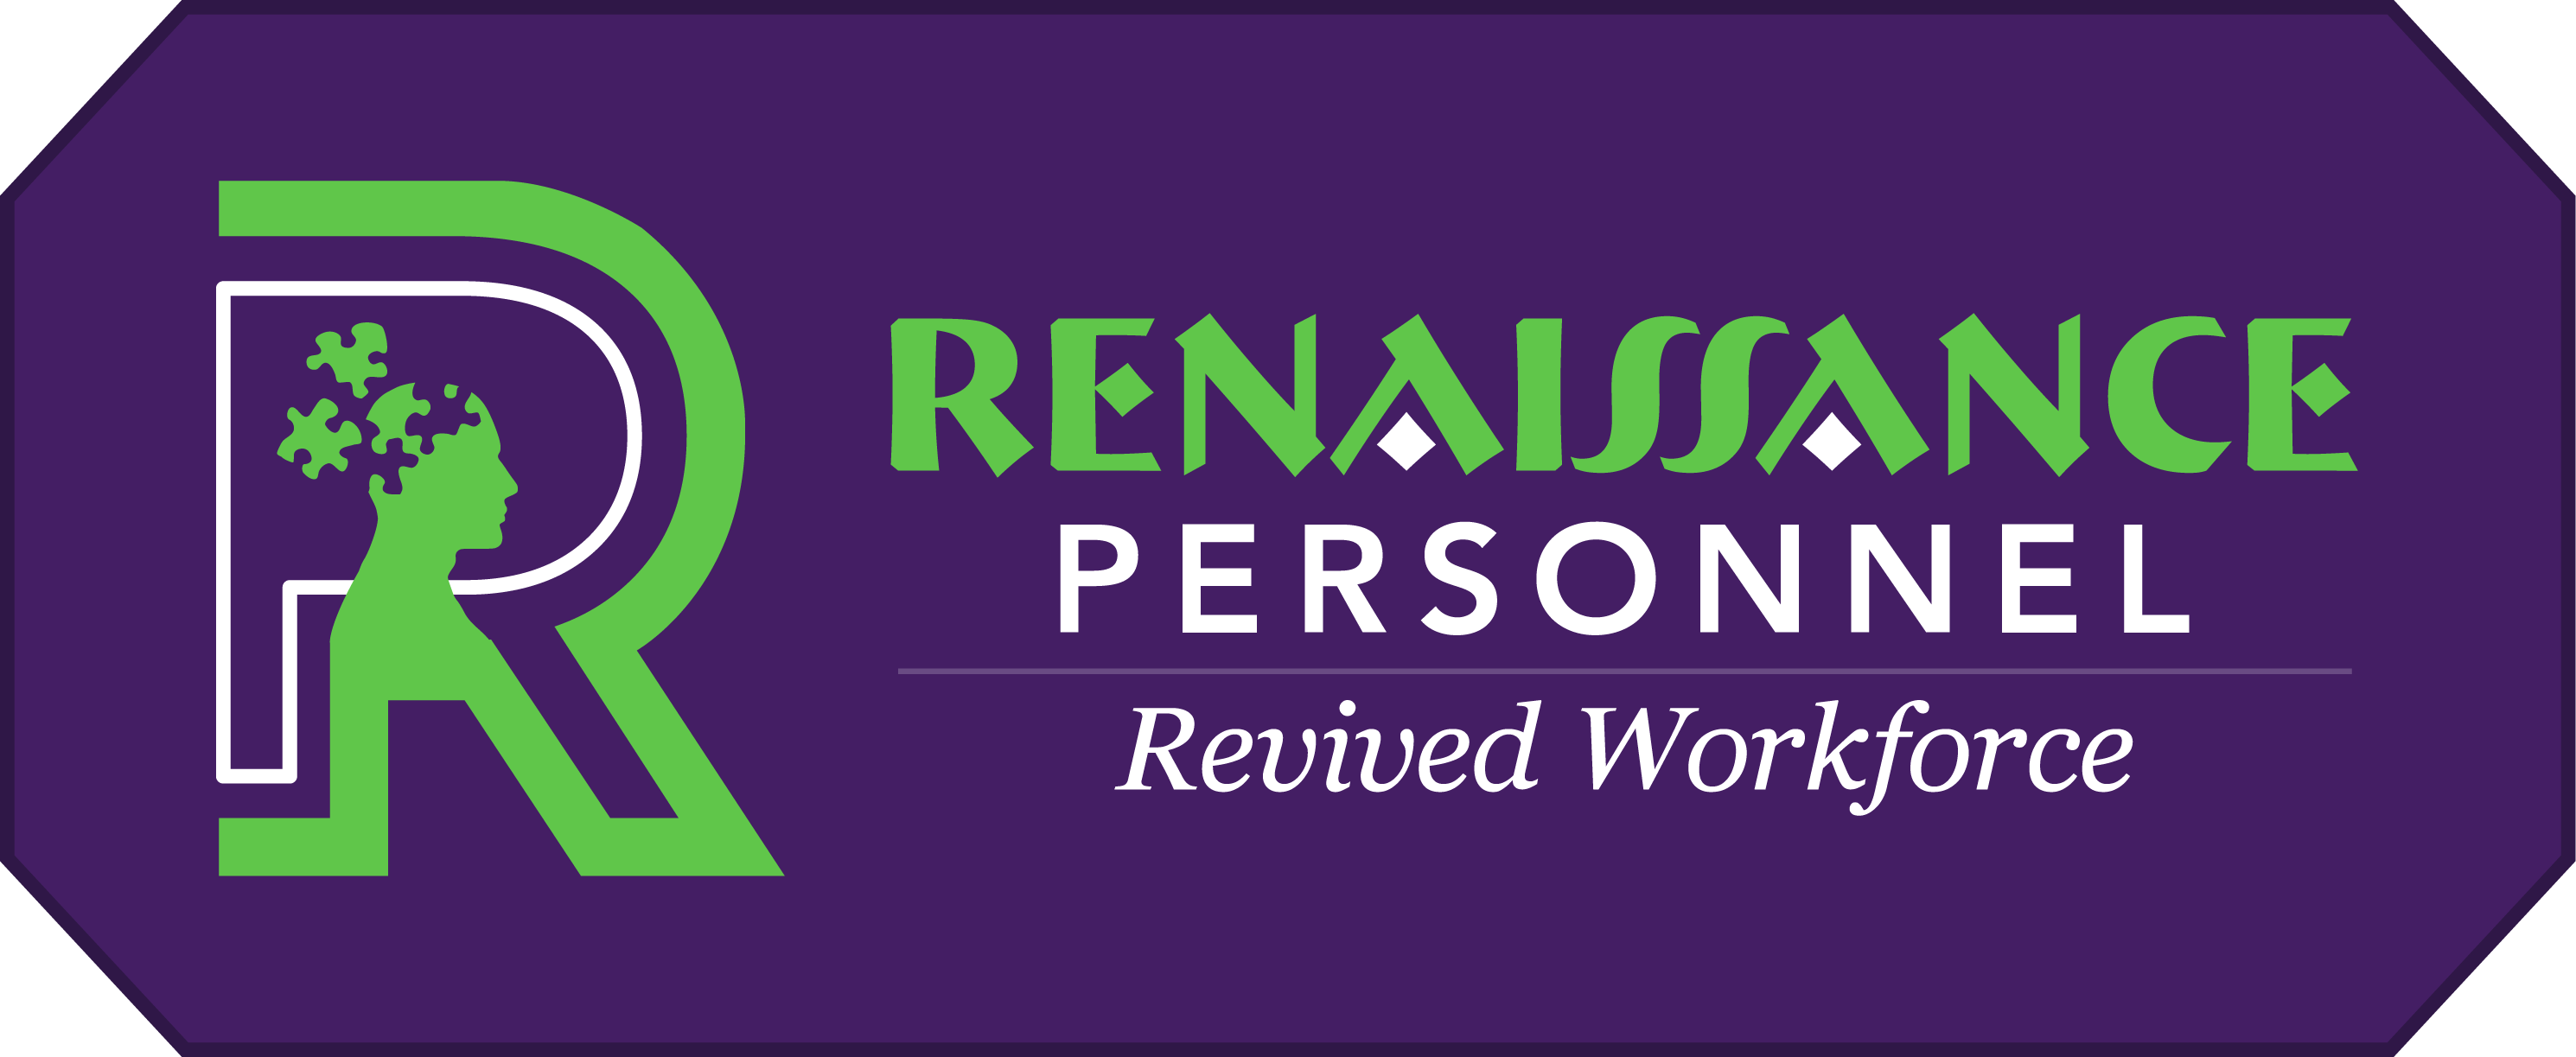 Renaissance Personnel Ltd